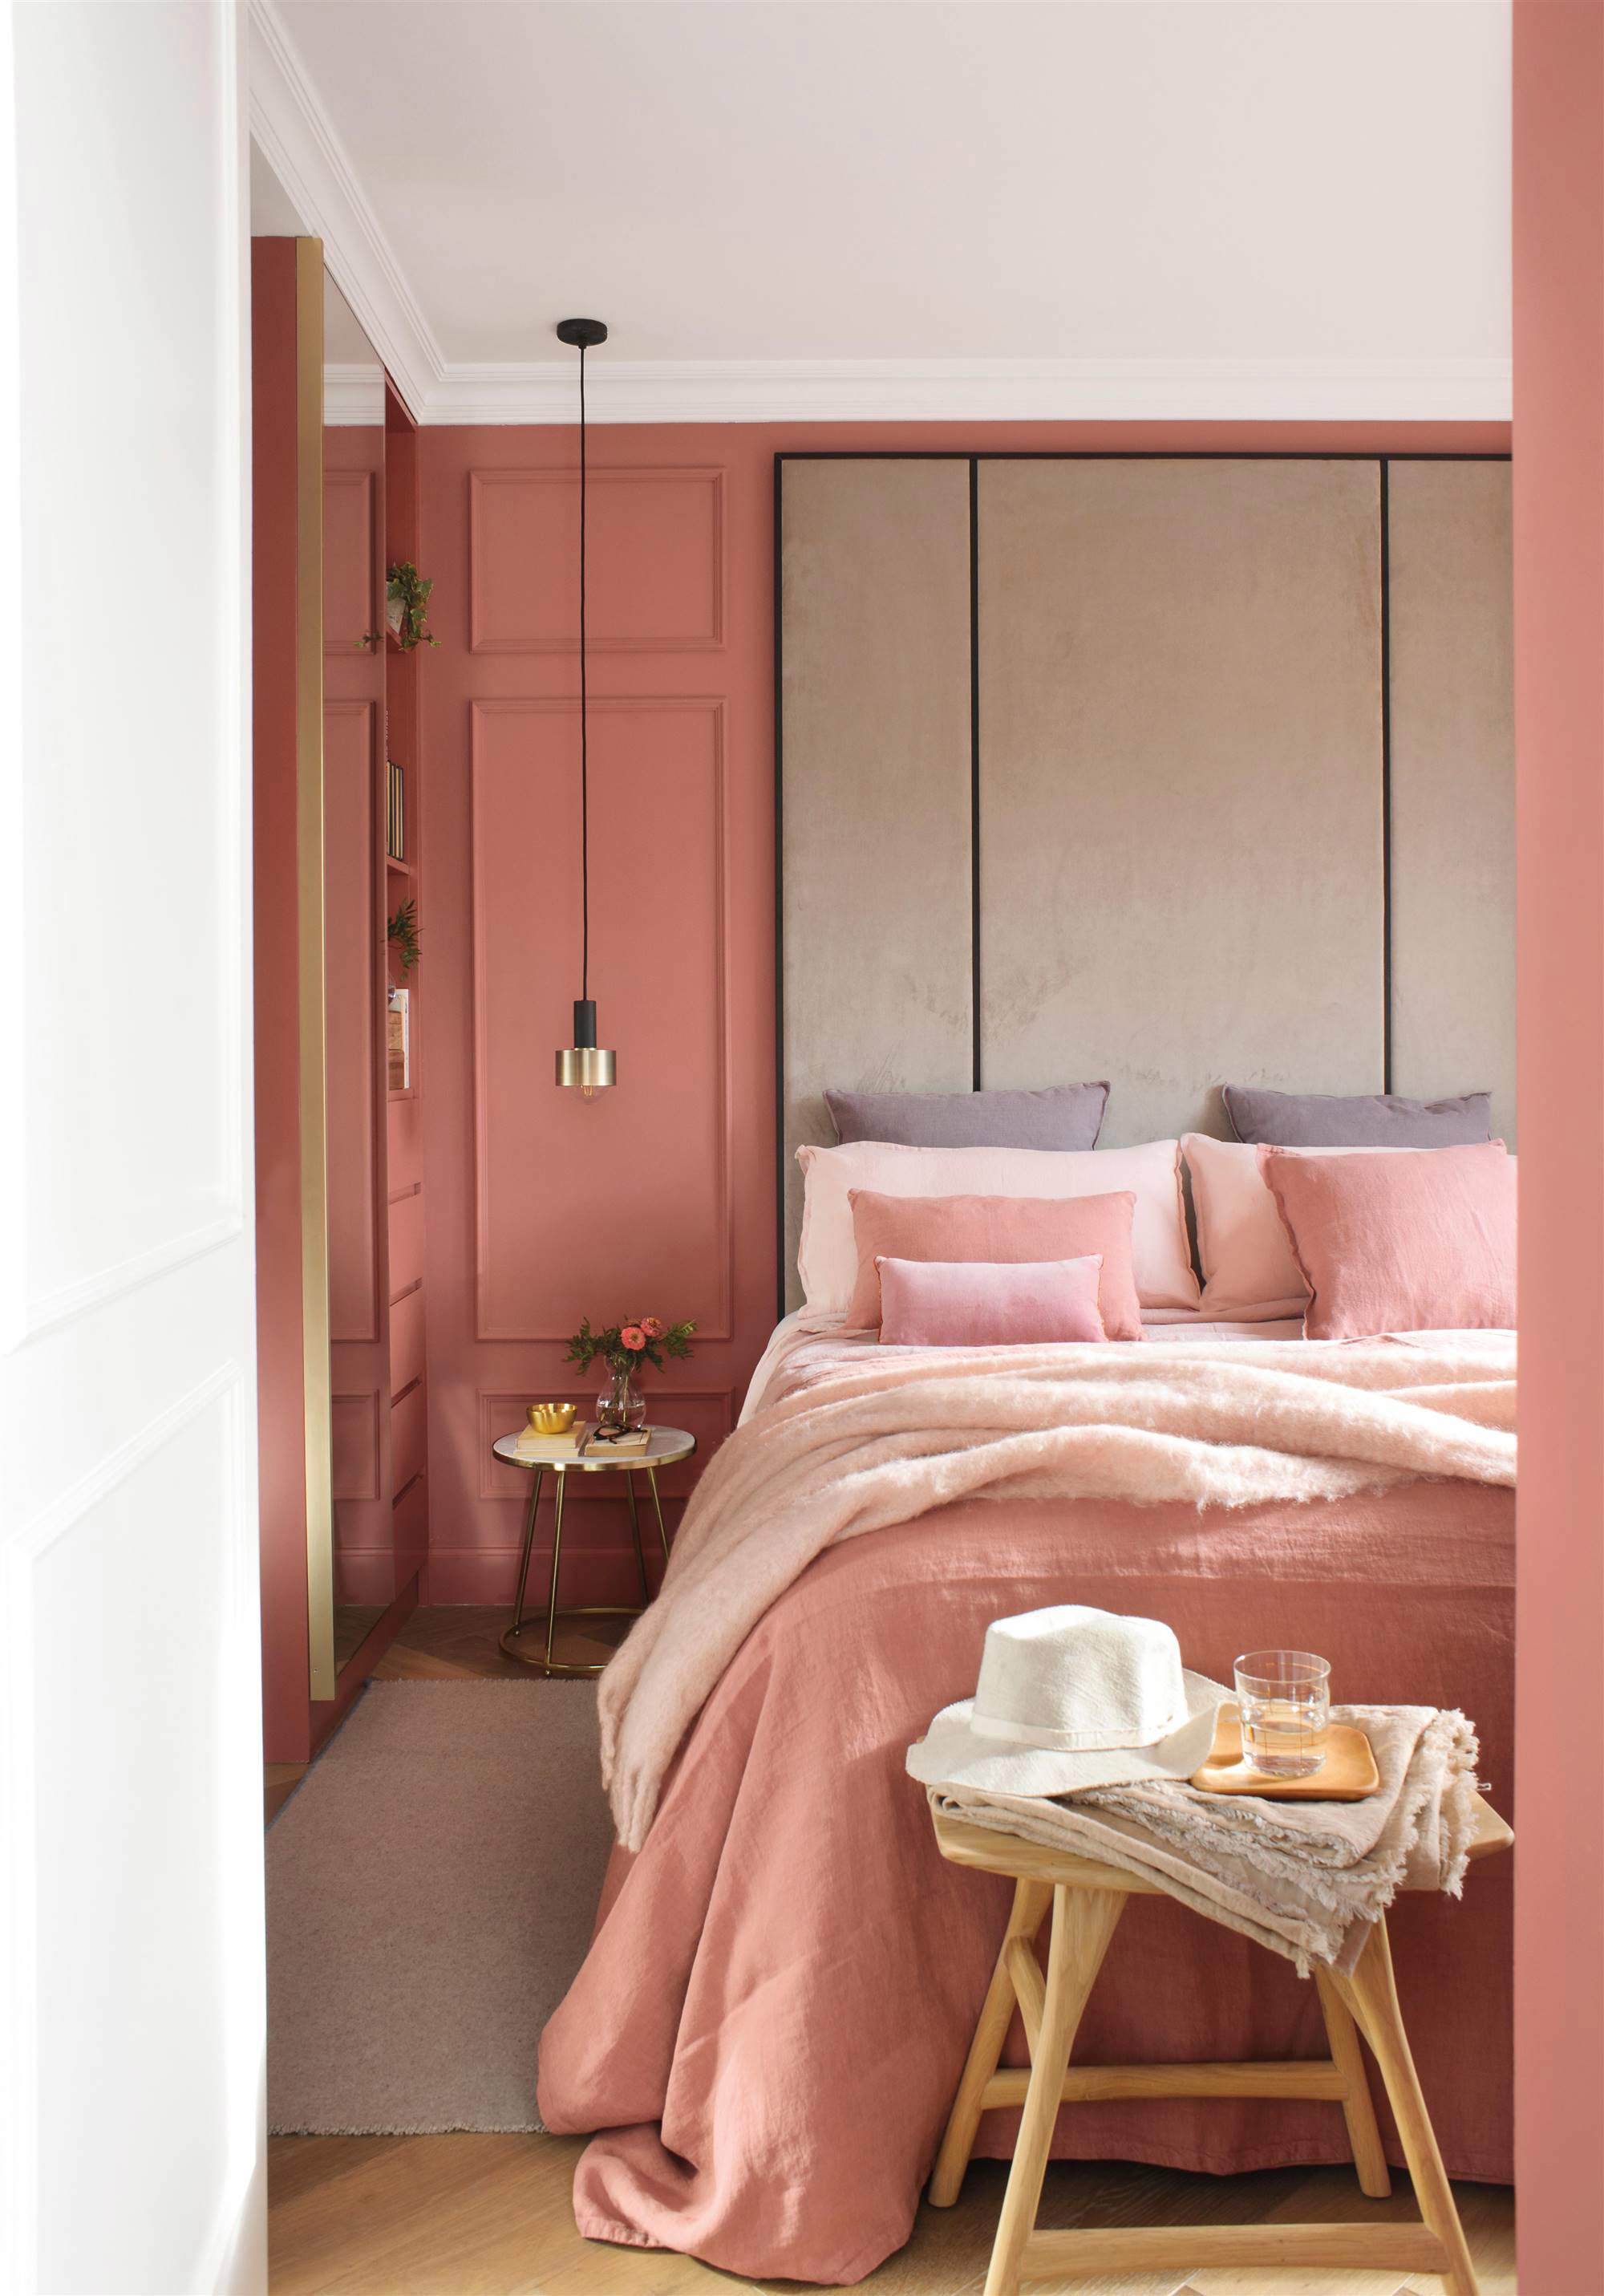 Dormitorio de matrimonio moderno con cabecero hasta el techo y paredes pintadas en coral.